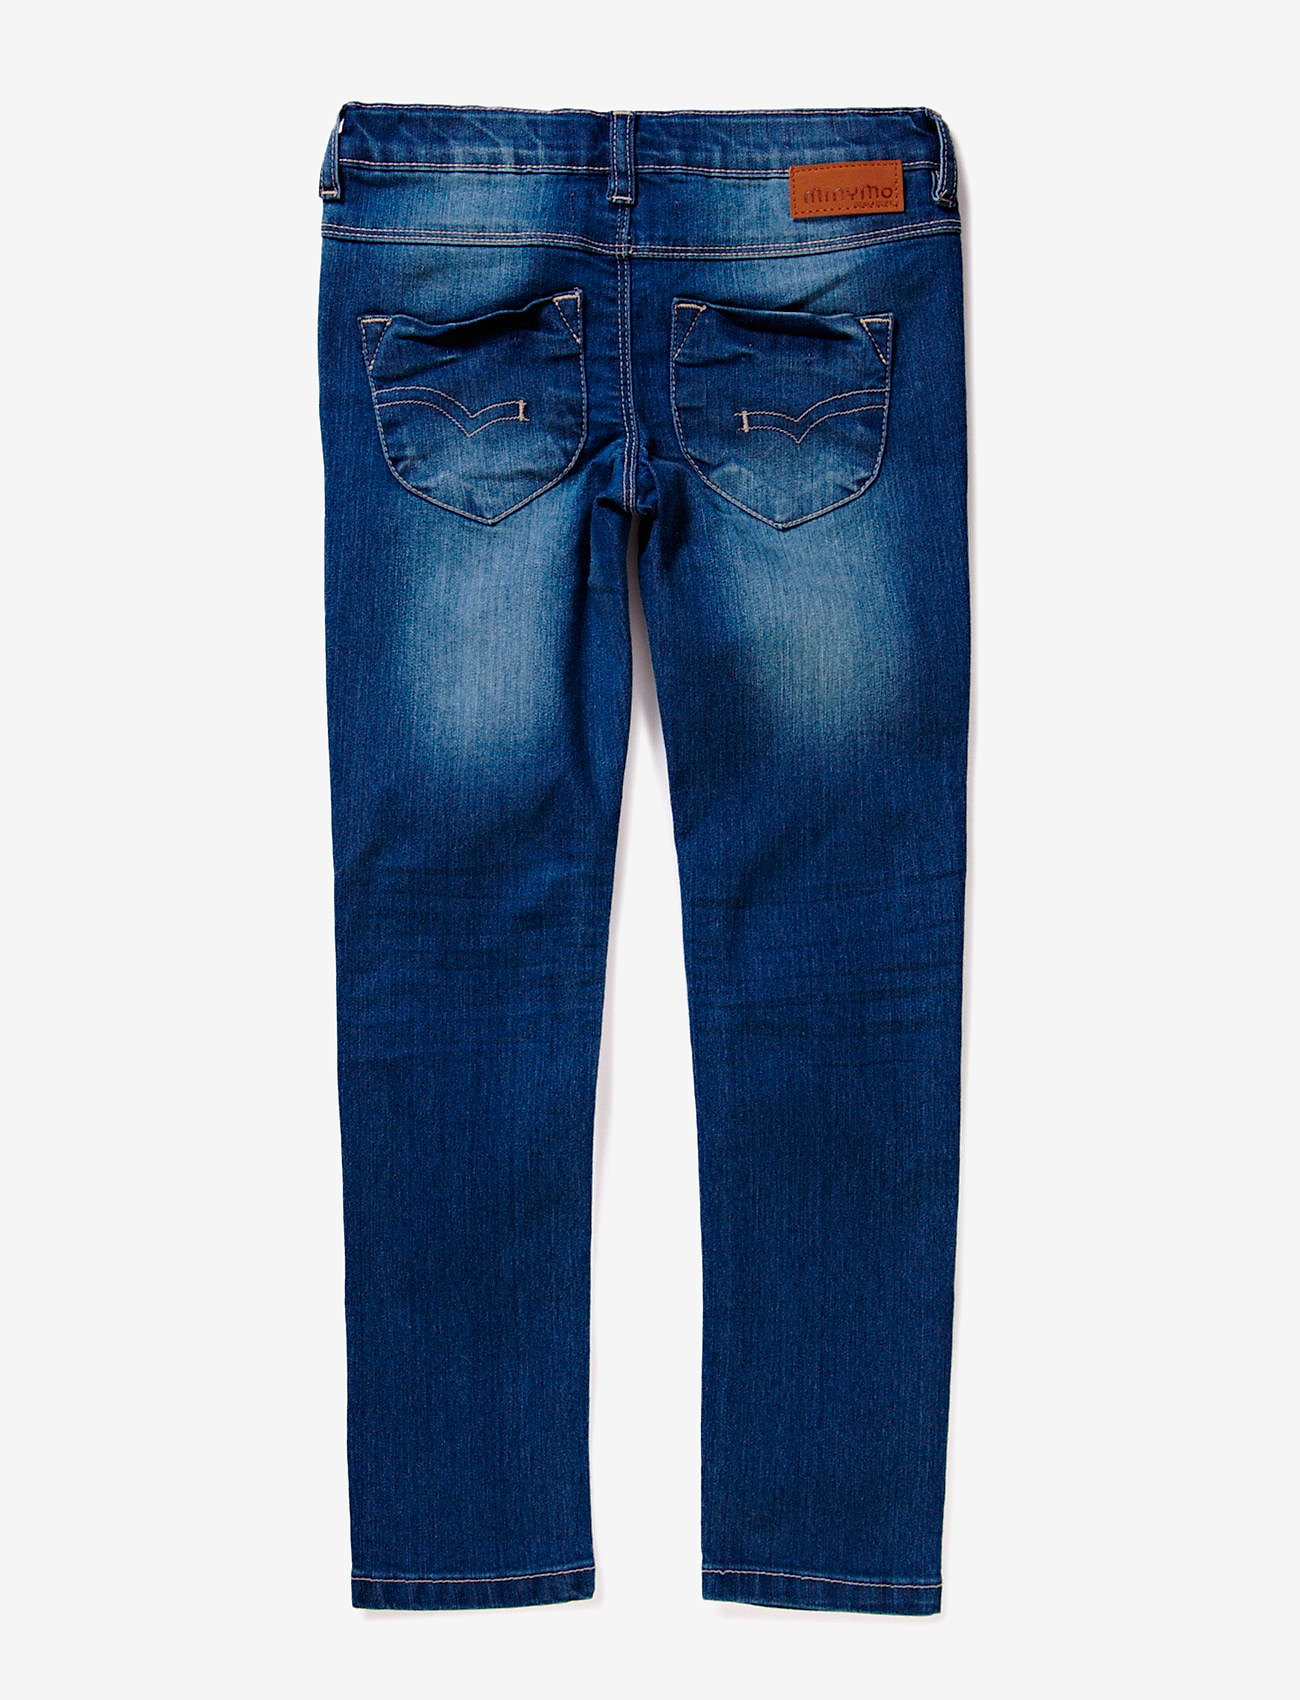 Minymo - Jeans F - Tight fit - denim - 1